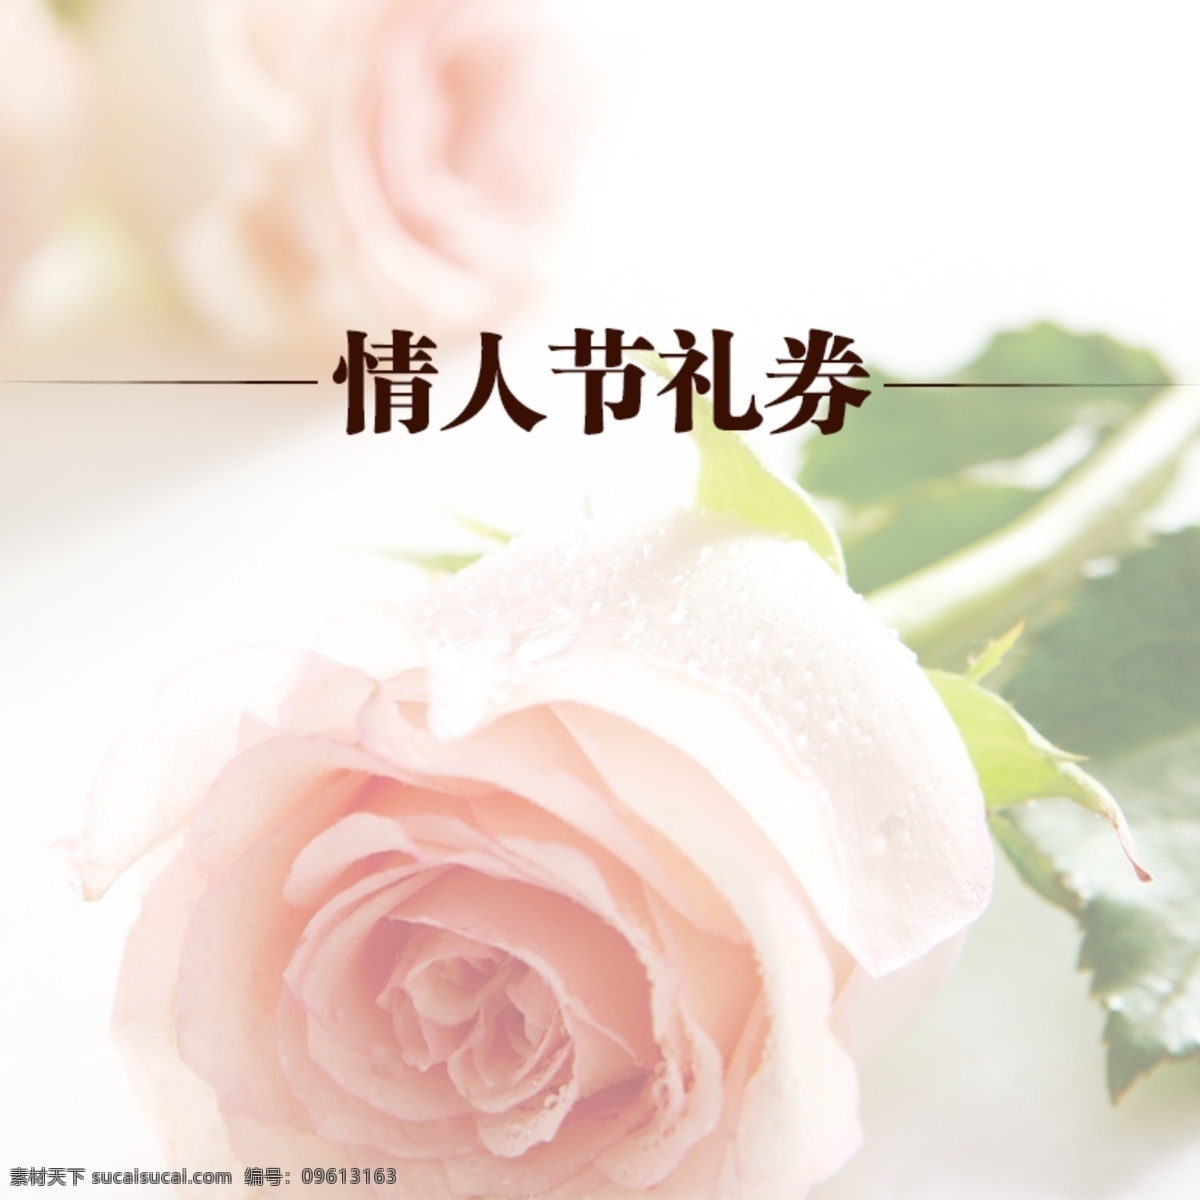 情人节 活动 爱情 主 图 2月14日 礼券 淘宝 玫瑰花 白色